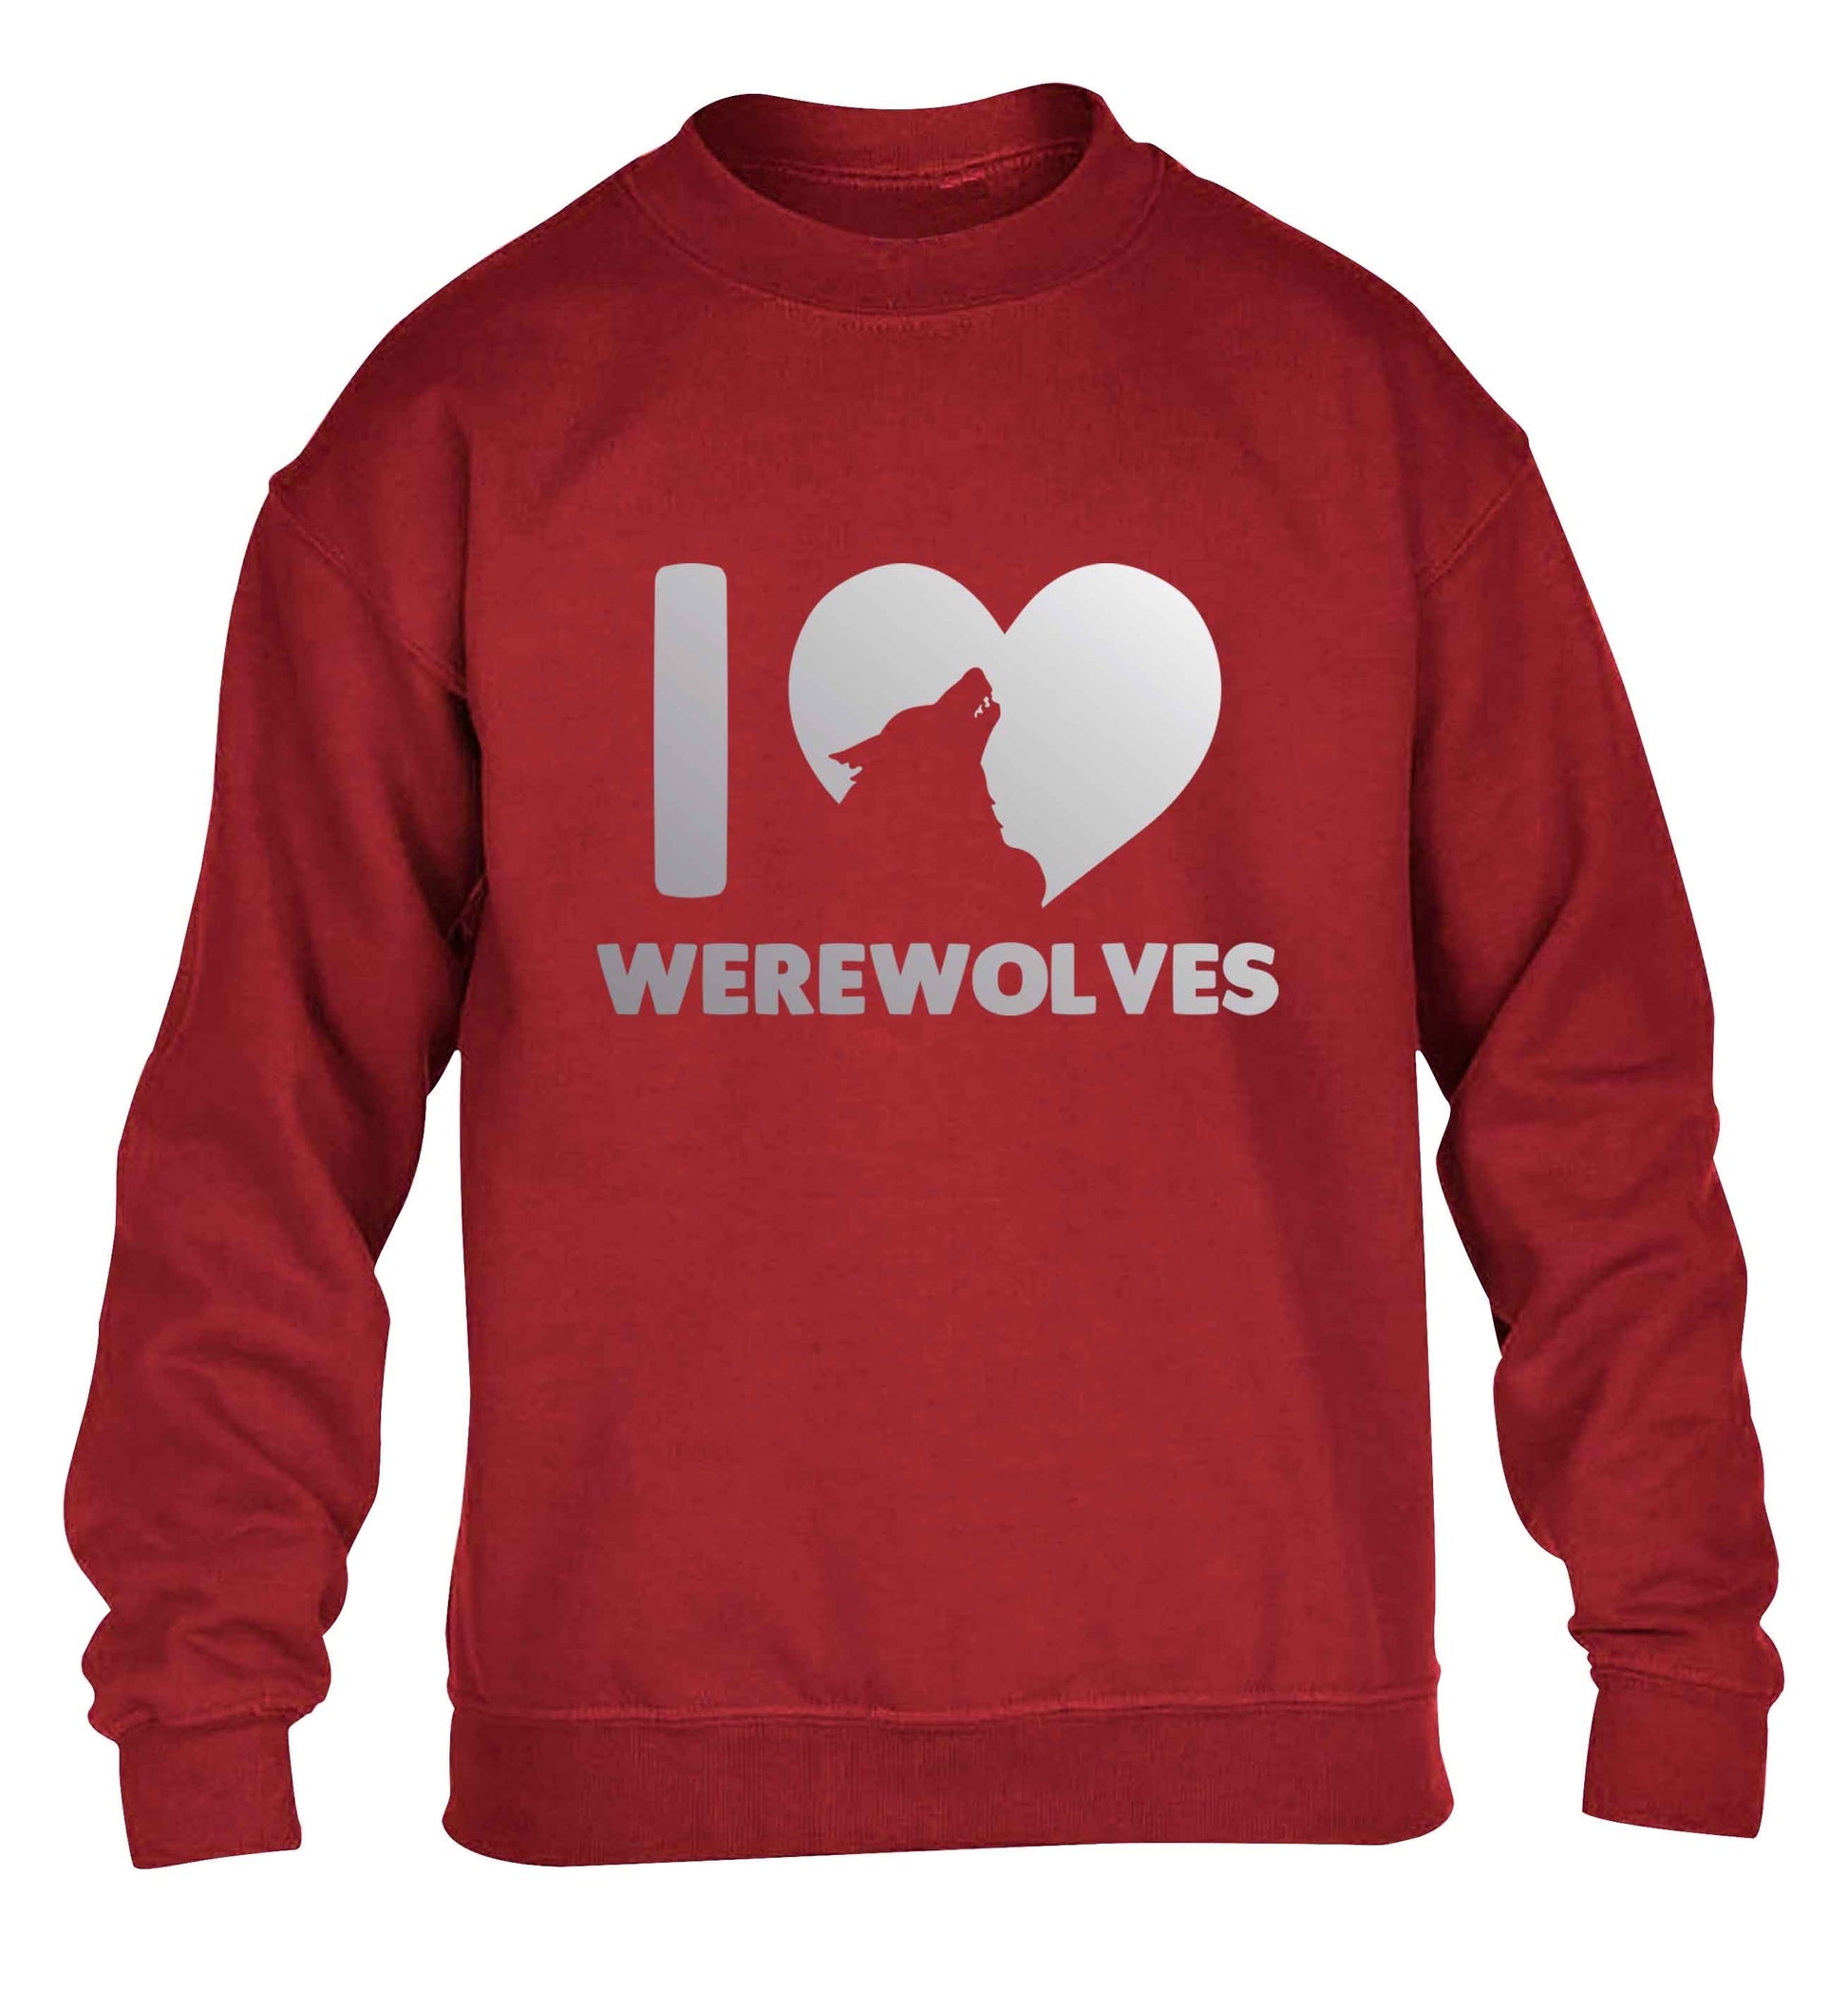 I love werewolves children's grey sweater 12-13 Years